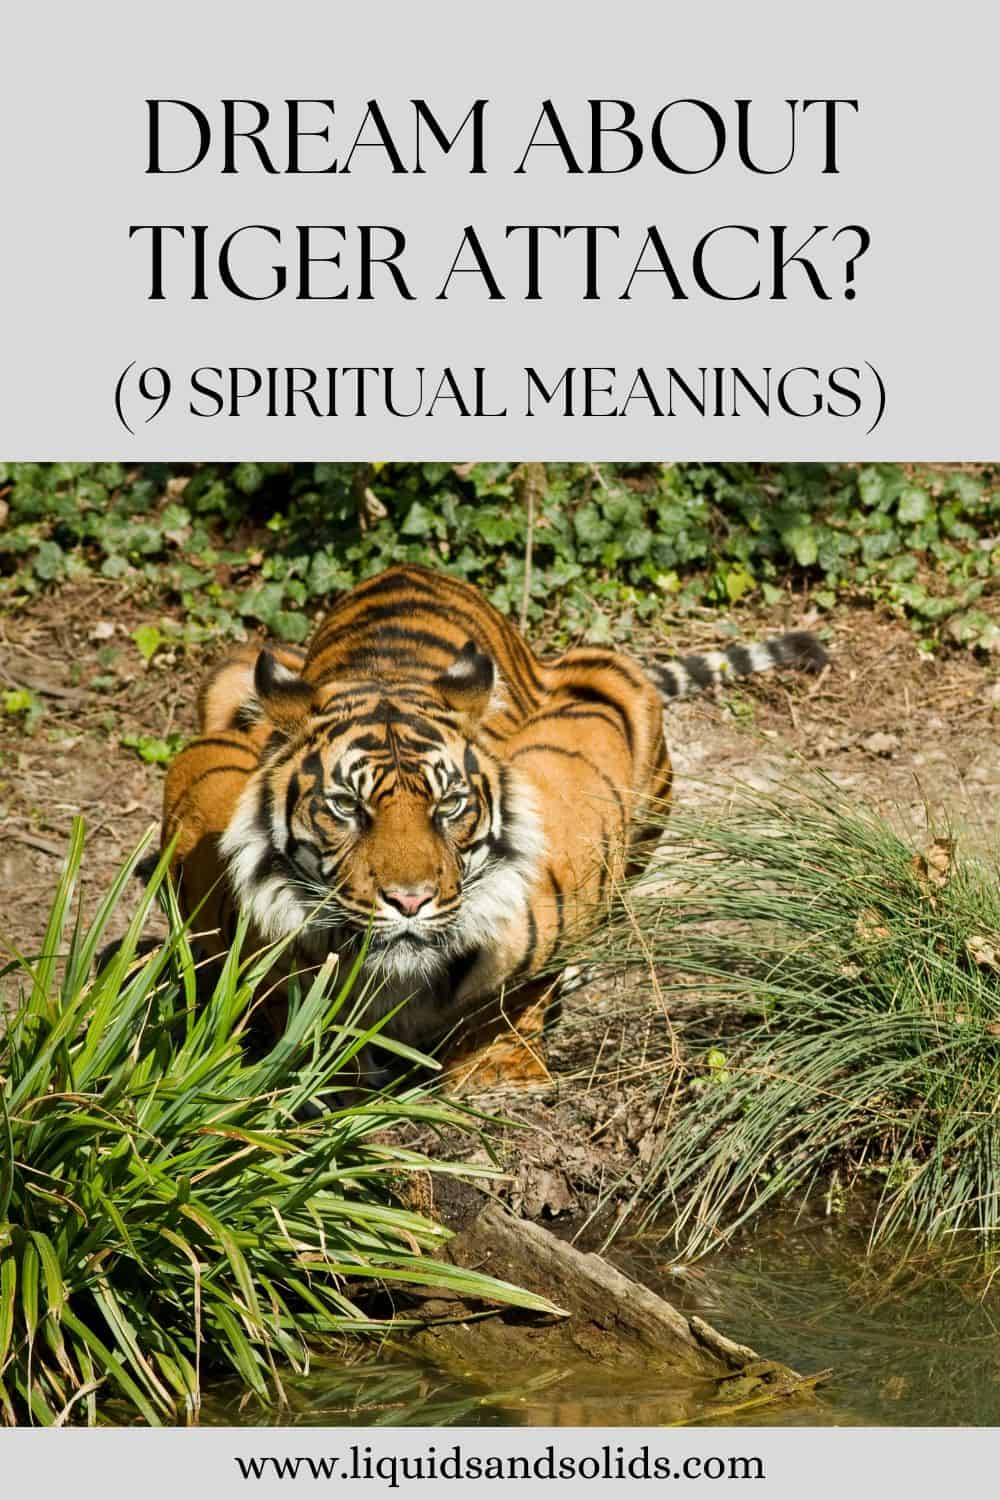  Soñar co ataque do tigre? (9 significados espirituais)